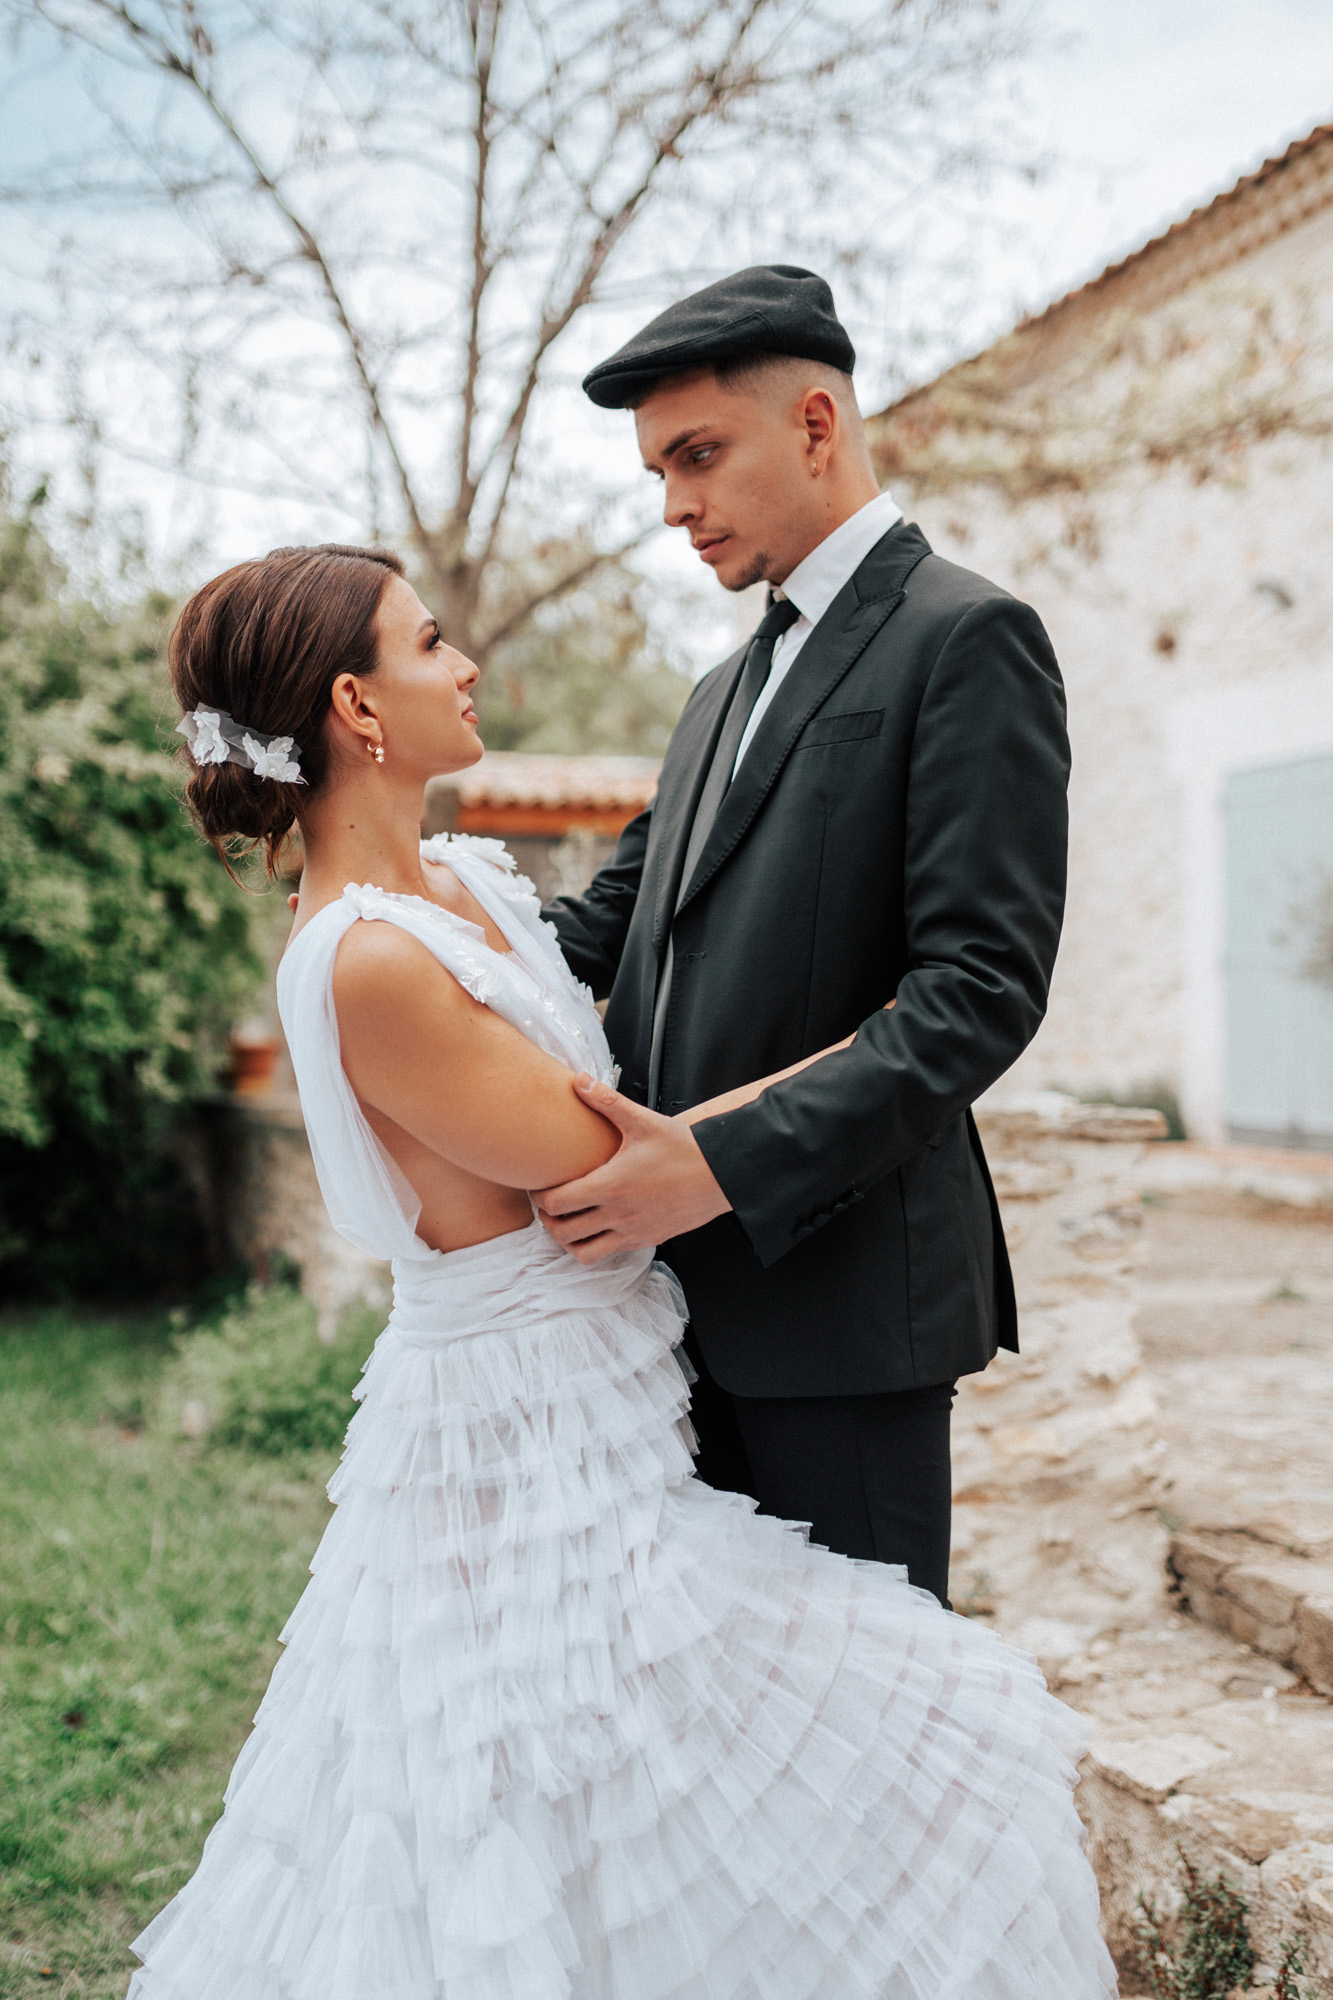 Photo numéro 18 du shooting mariage provençal